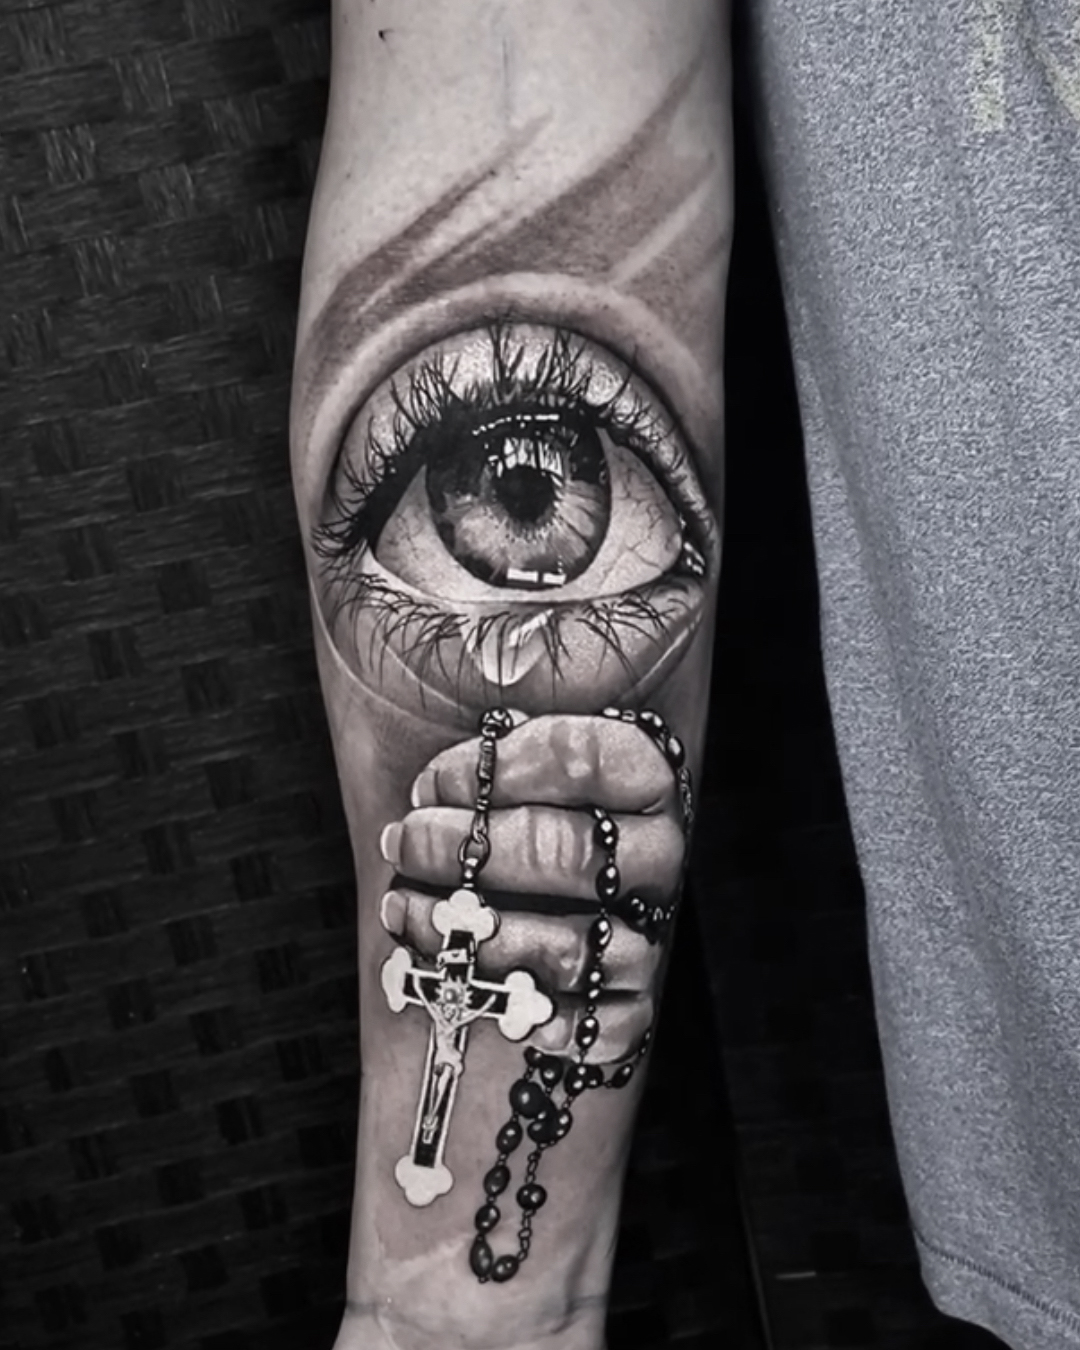 Tattoo uploaded by Onny Somboon • #rose #foot #rosary #tattoo • Tattoodo